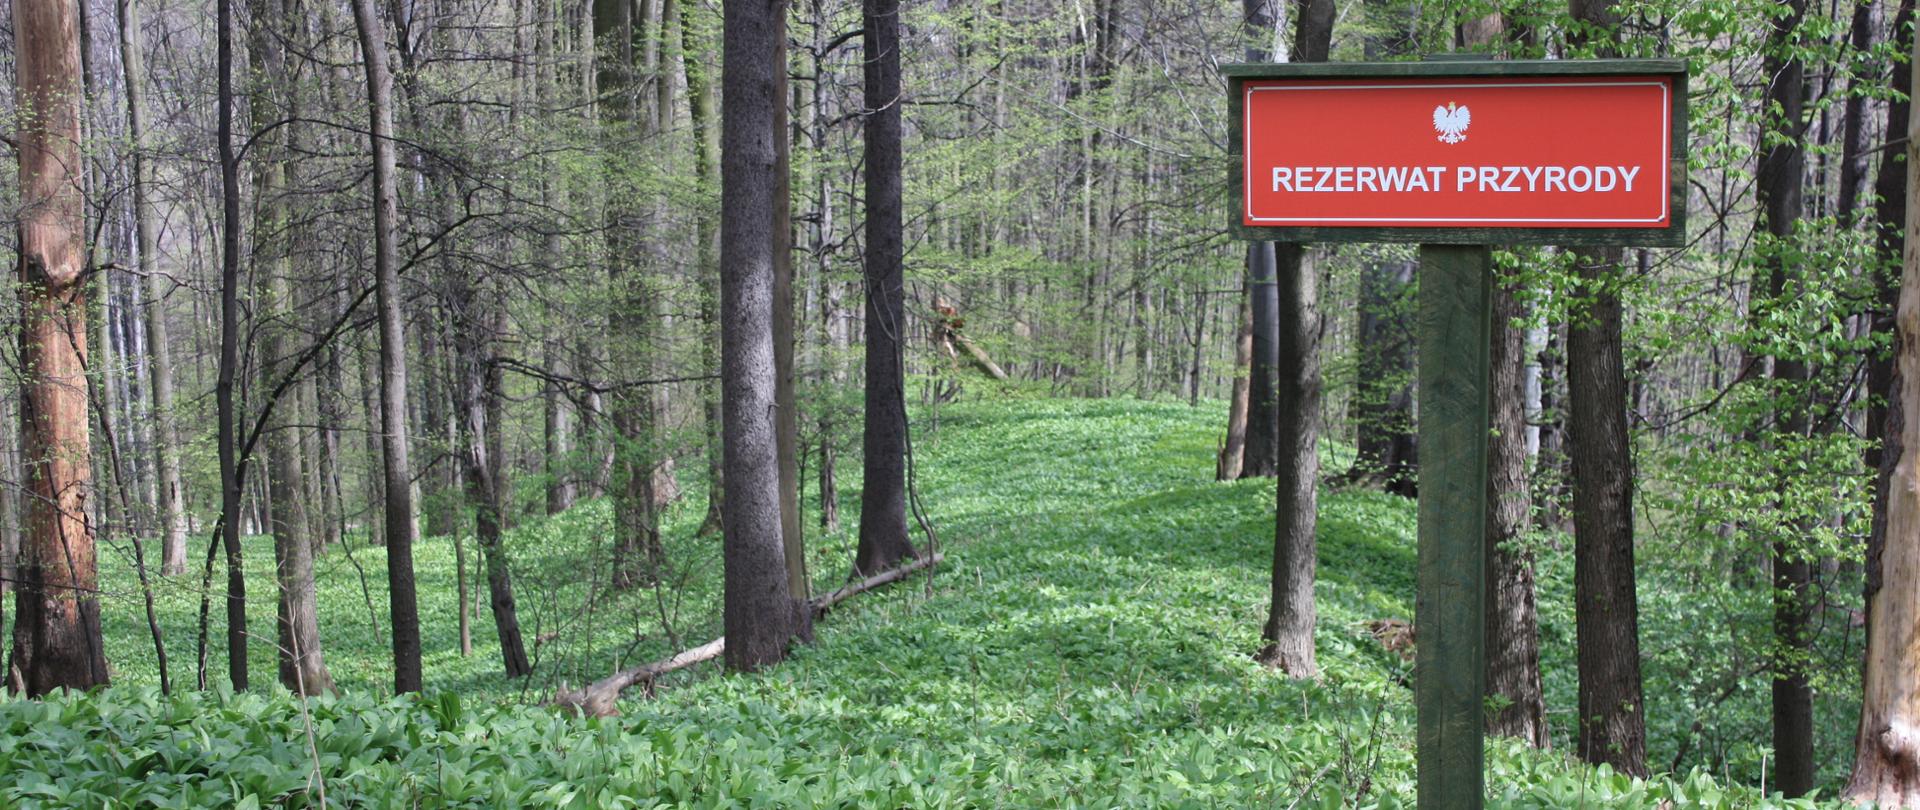 Widok na las z tablicą informacyjną o rezerwacie przyrody